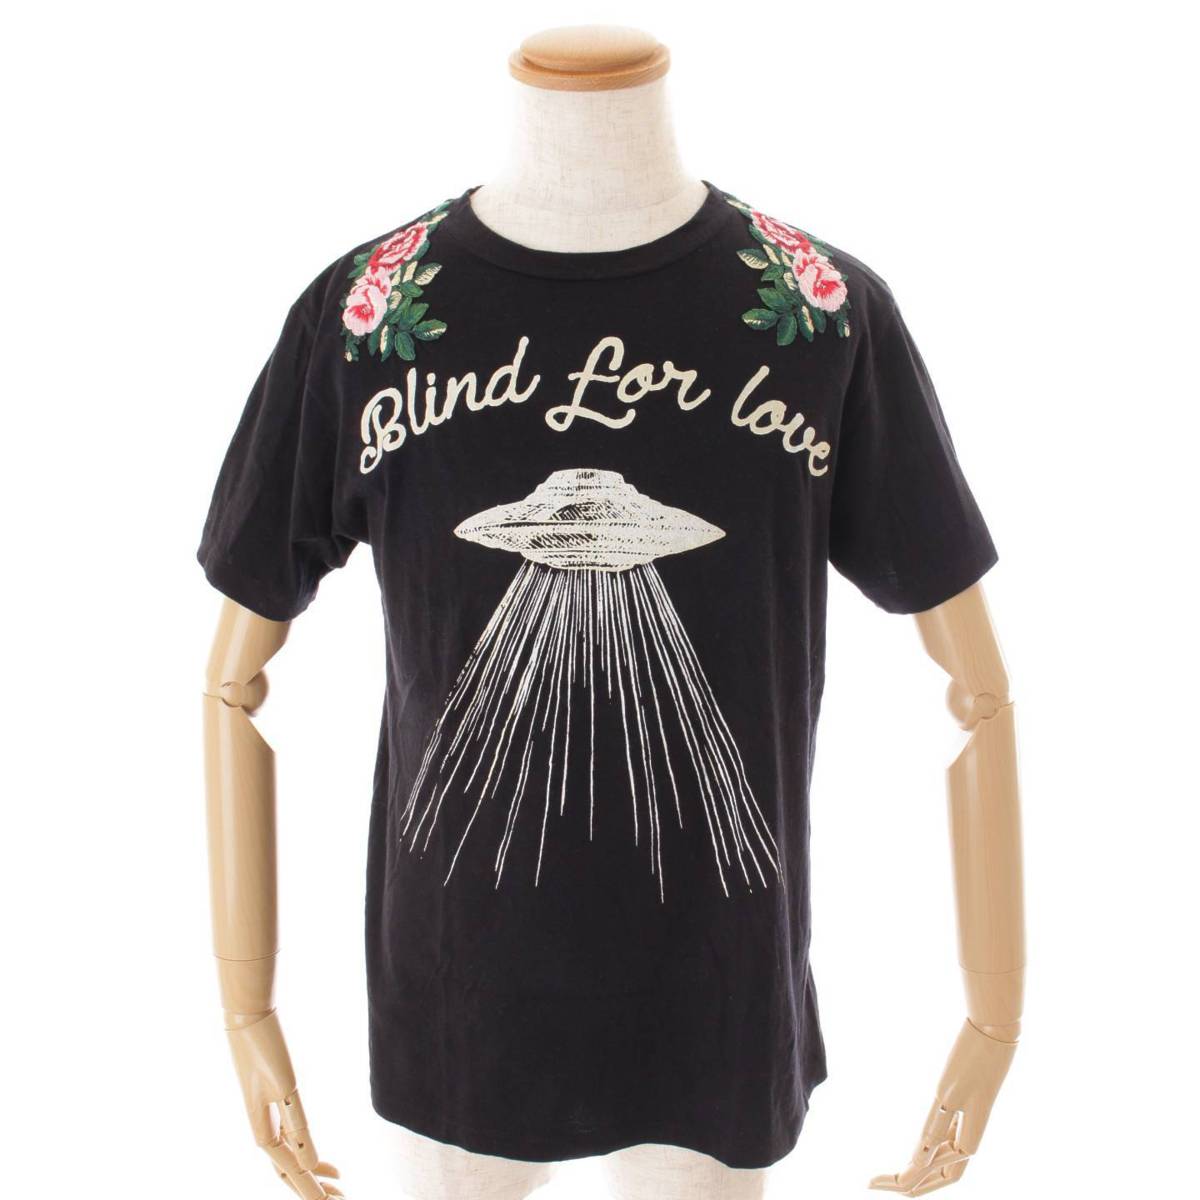 グッチ(Gucci) BLIND FOR LOVE UFOプリント Tシャツ トップス 469307